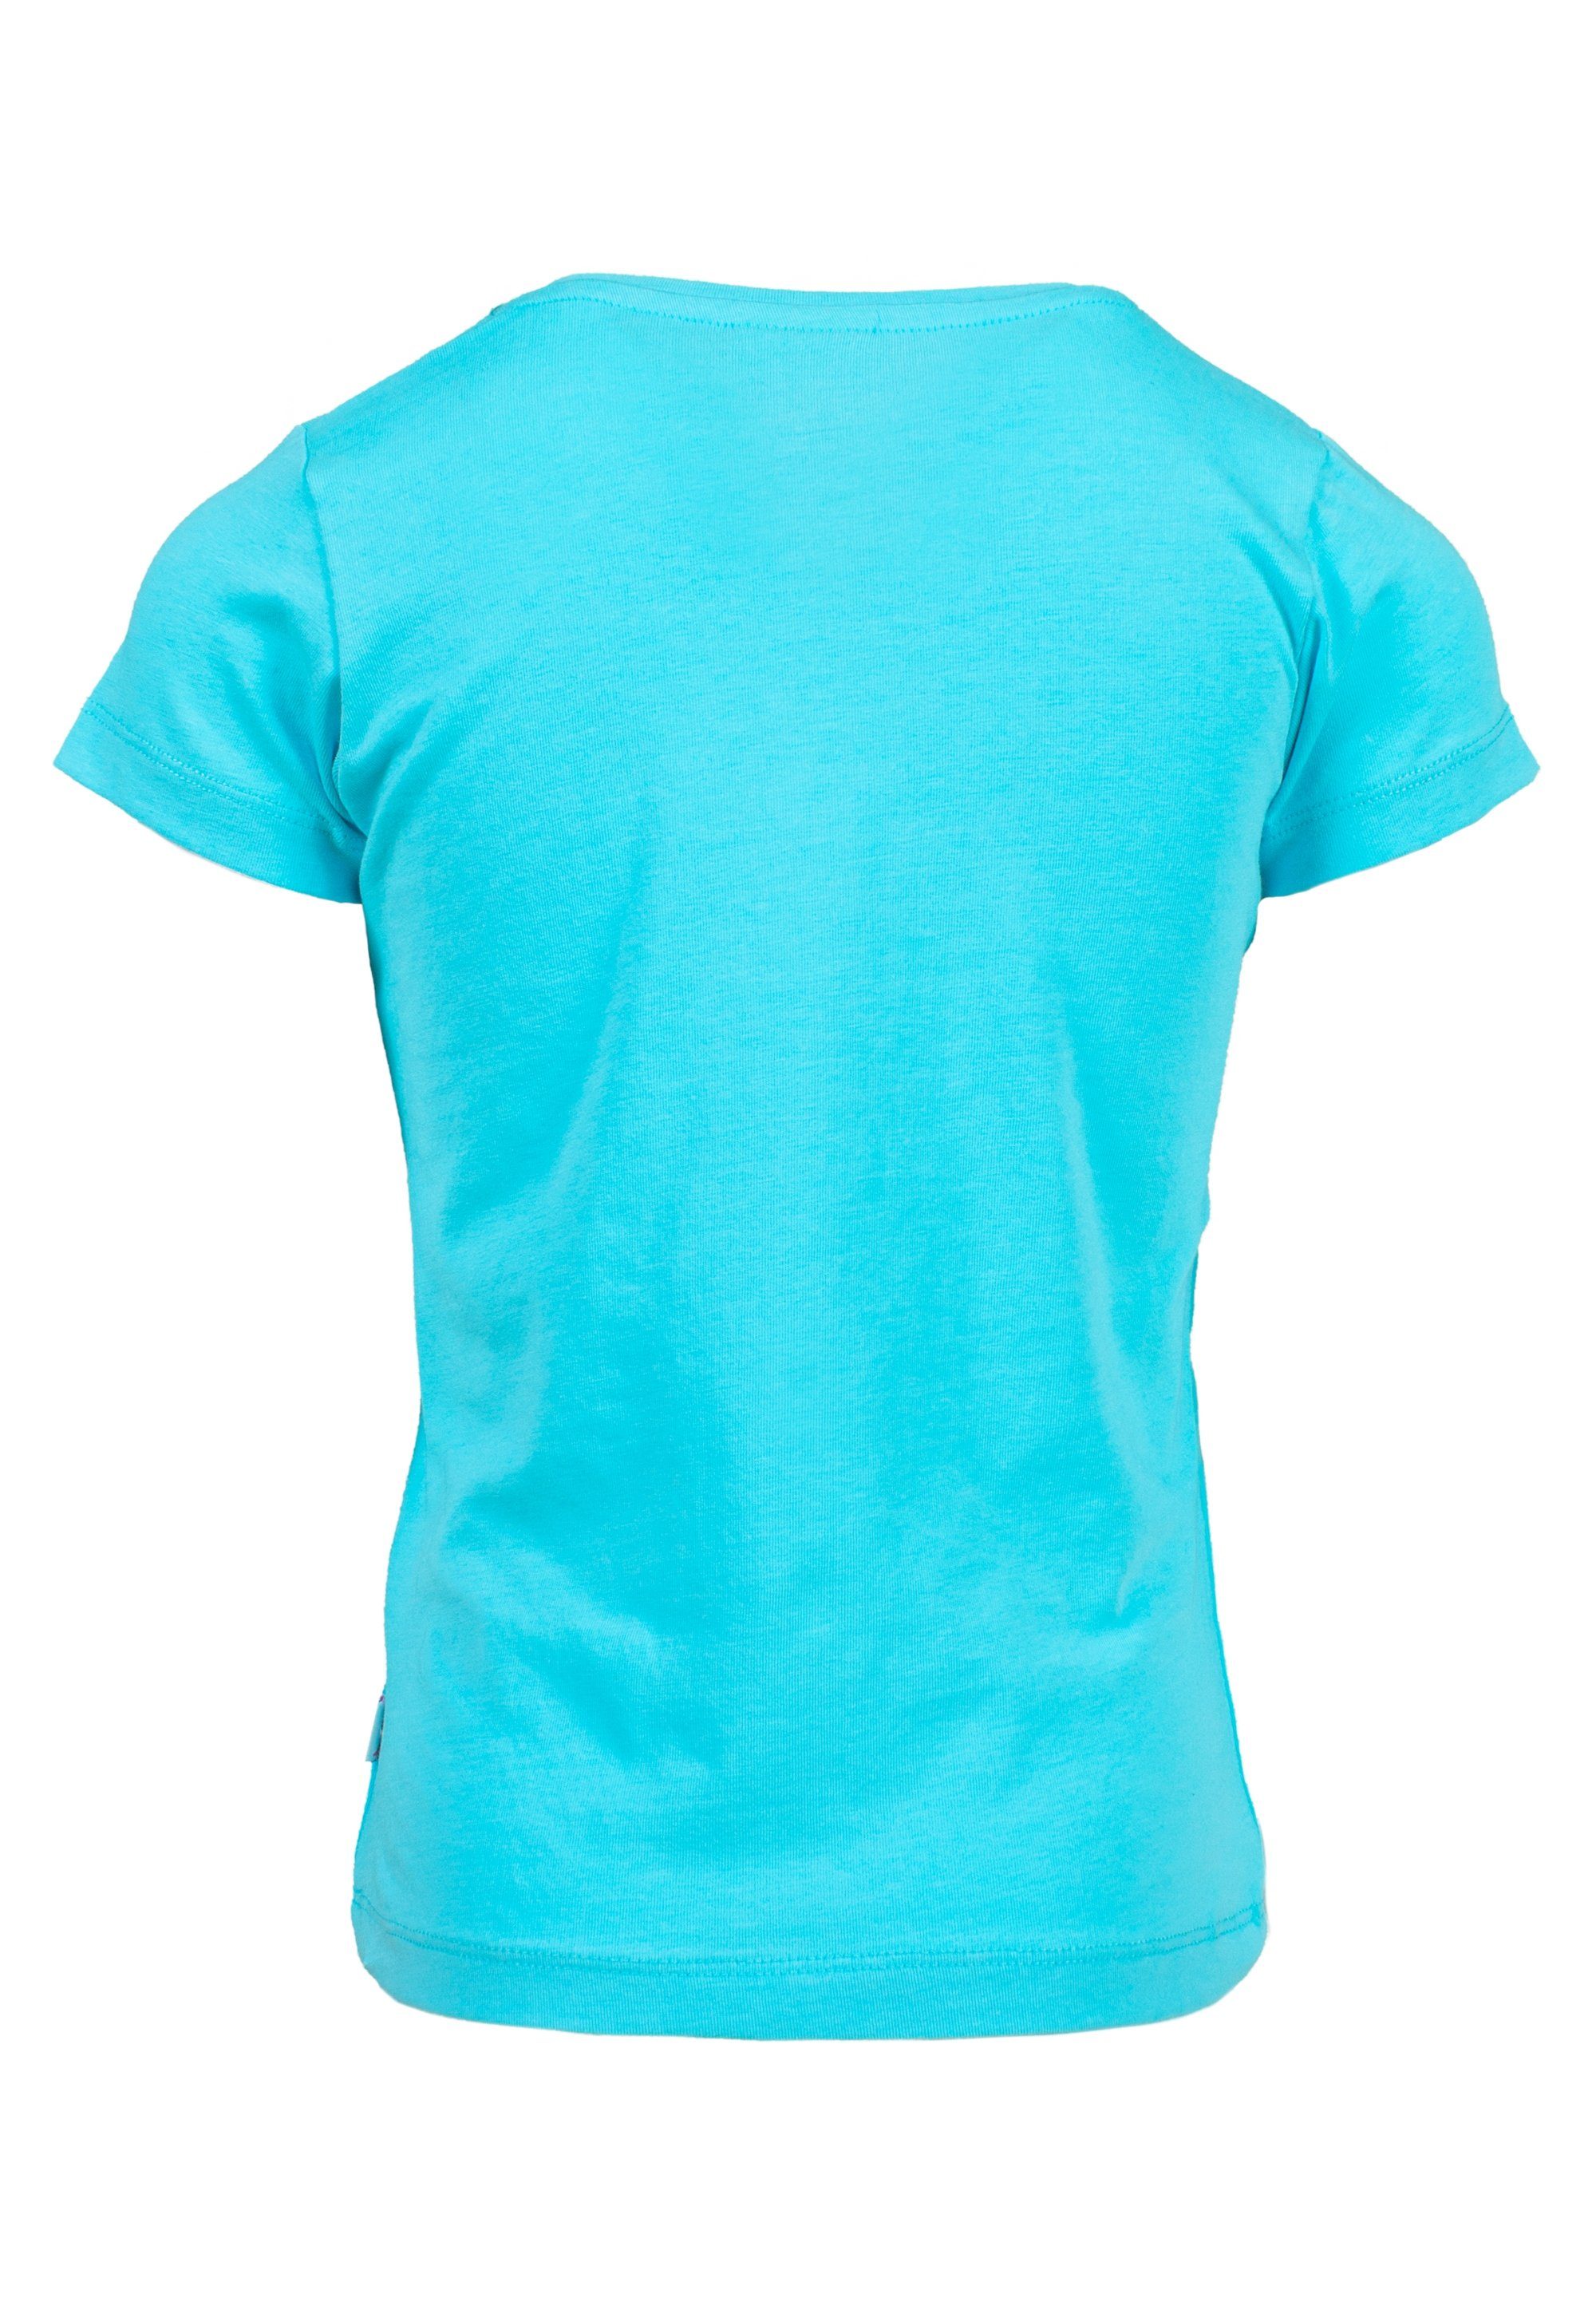 AND (2-tlg) PEPPER weiß, mit Beach T-Shirt türkis Glitzerdruck SALT